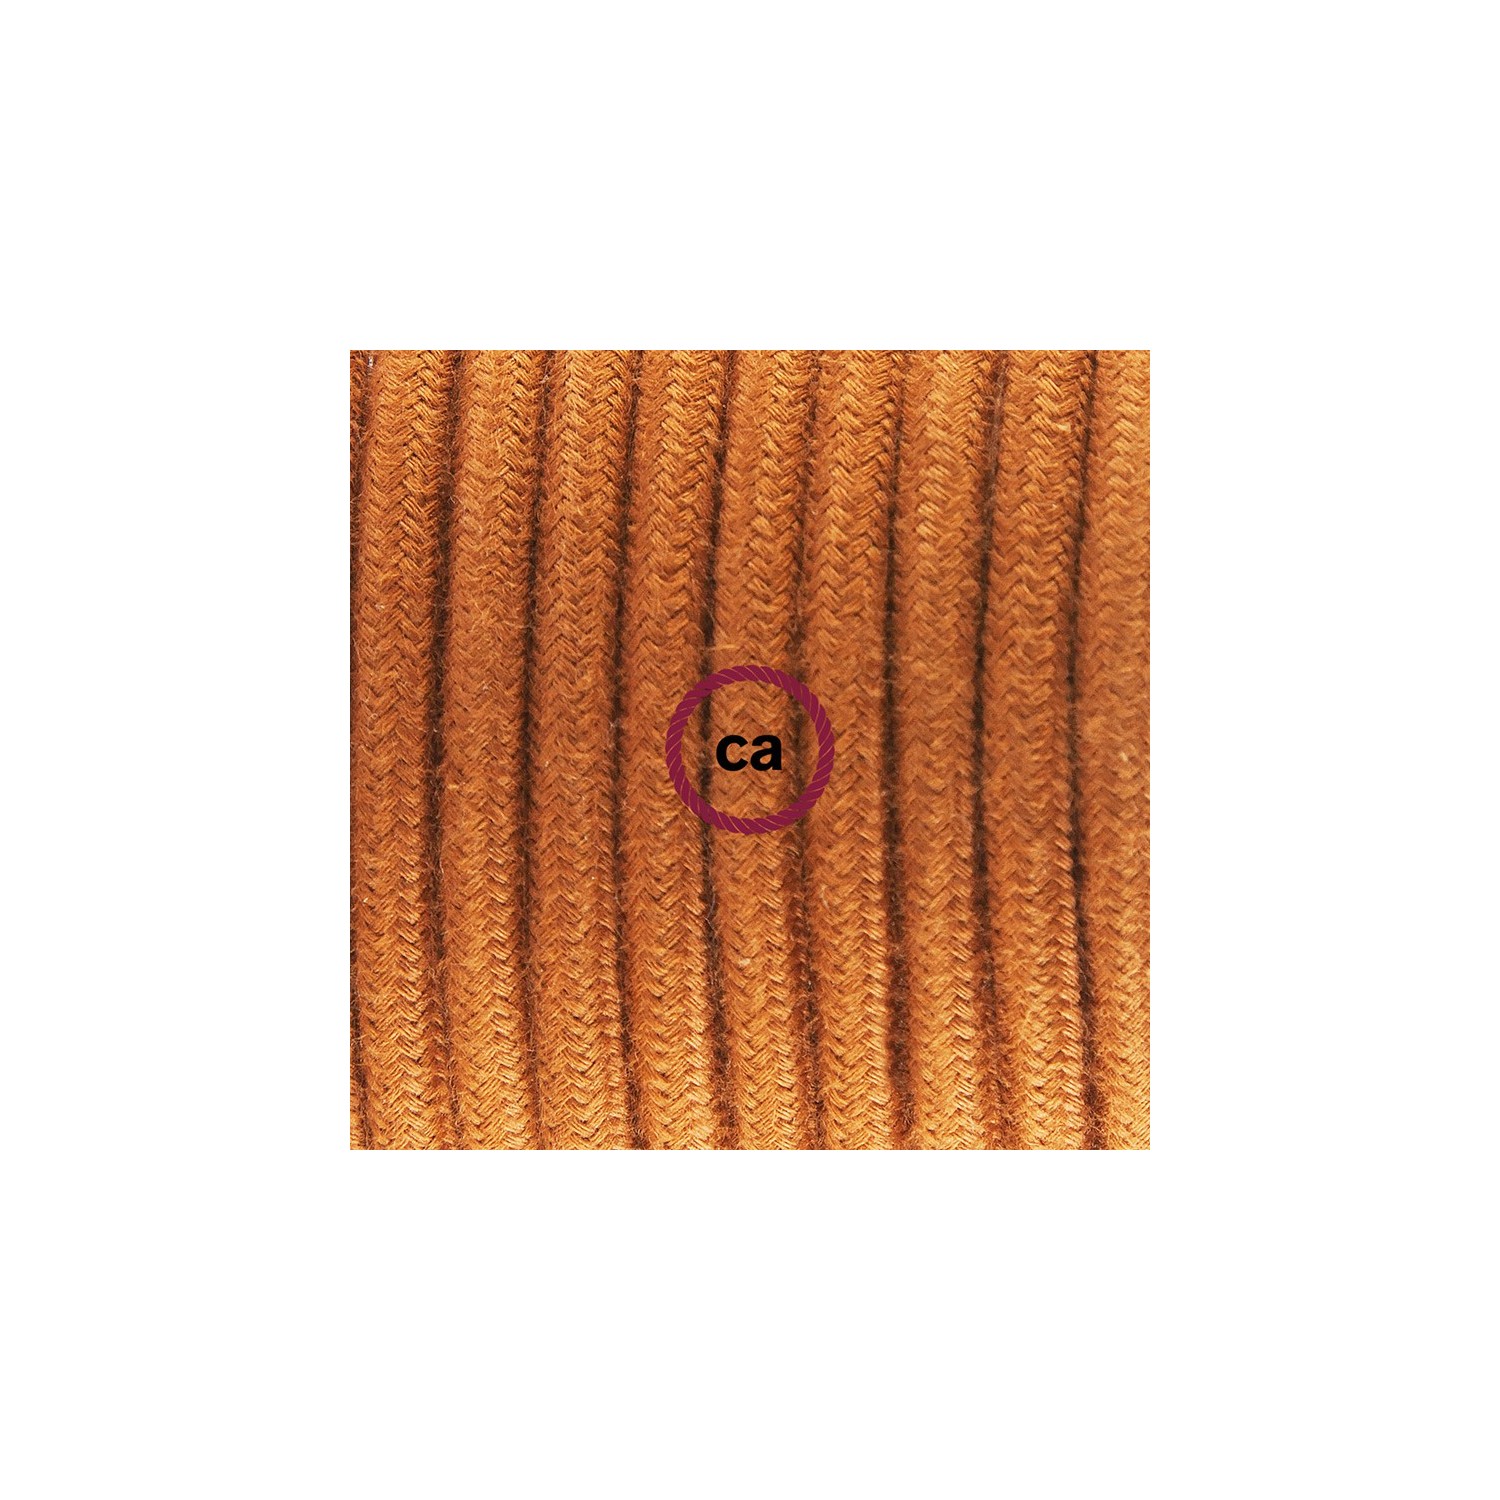 Ronde flexibele textielkabel van katoen met schakelaar en stekker. RC23 - hert bruin 1,80 m.